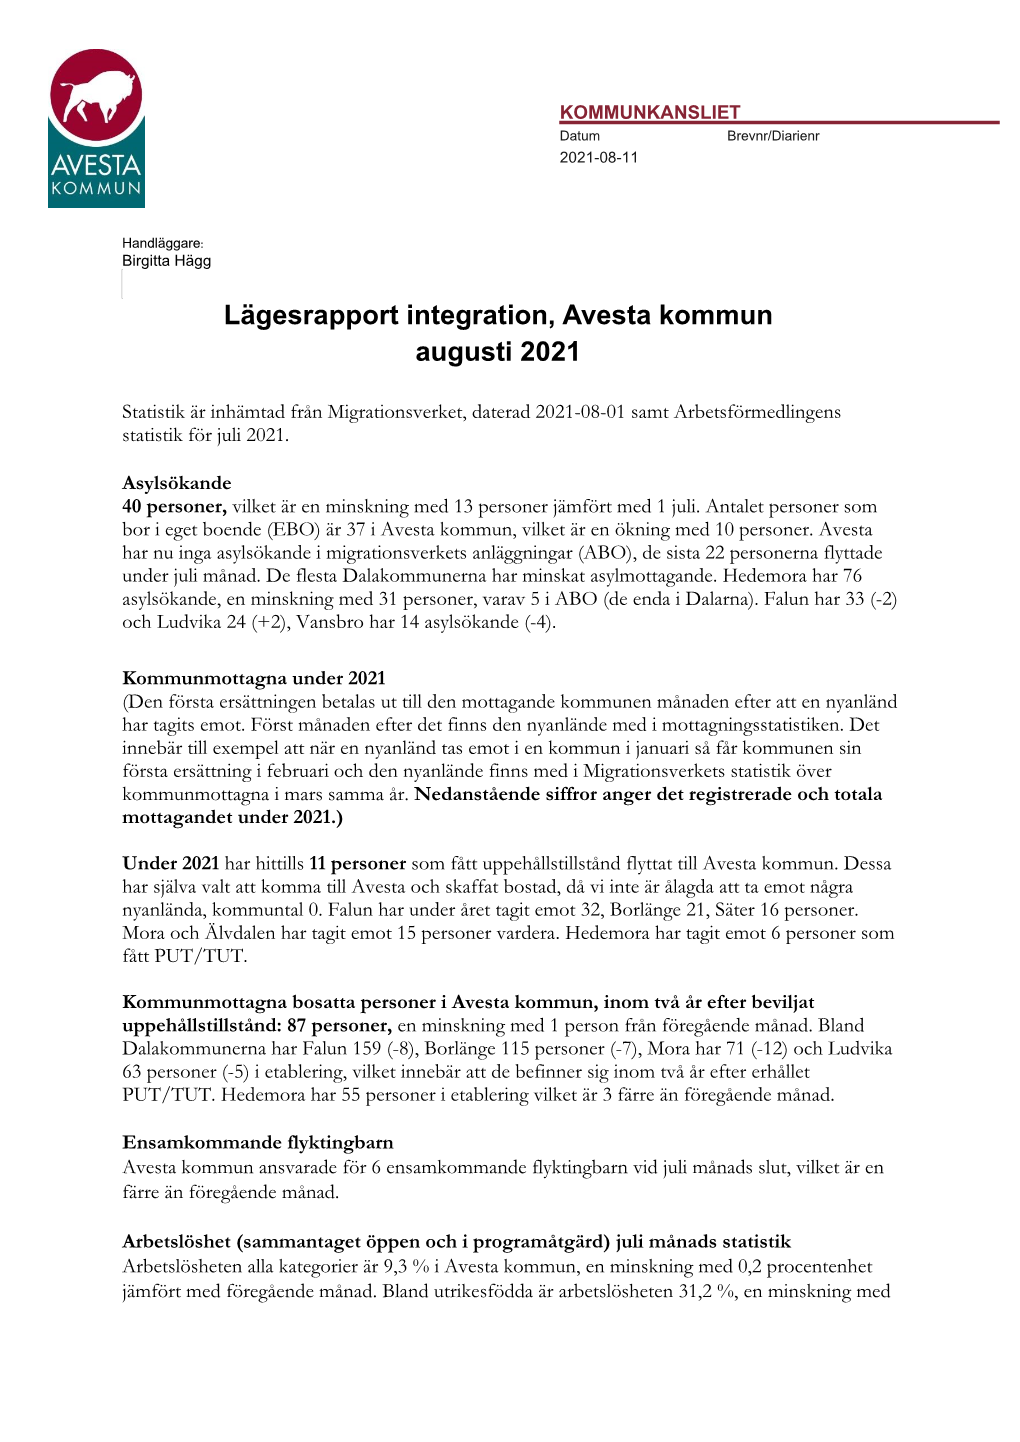 Lägesrapport Integration, Avesta Kommun Augusti 2021